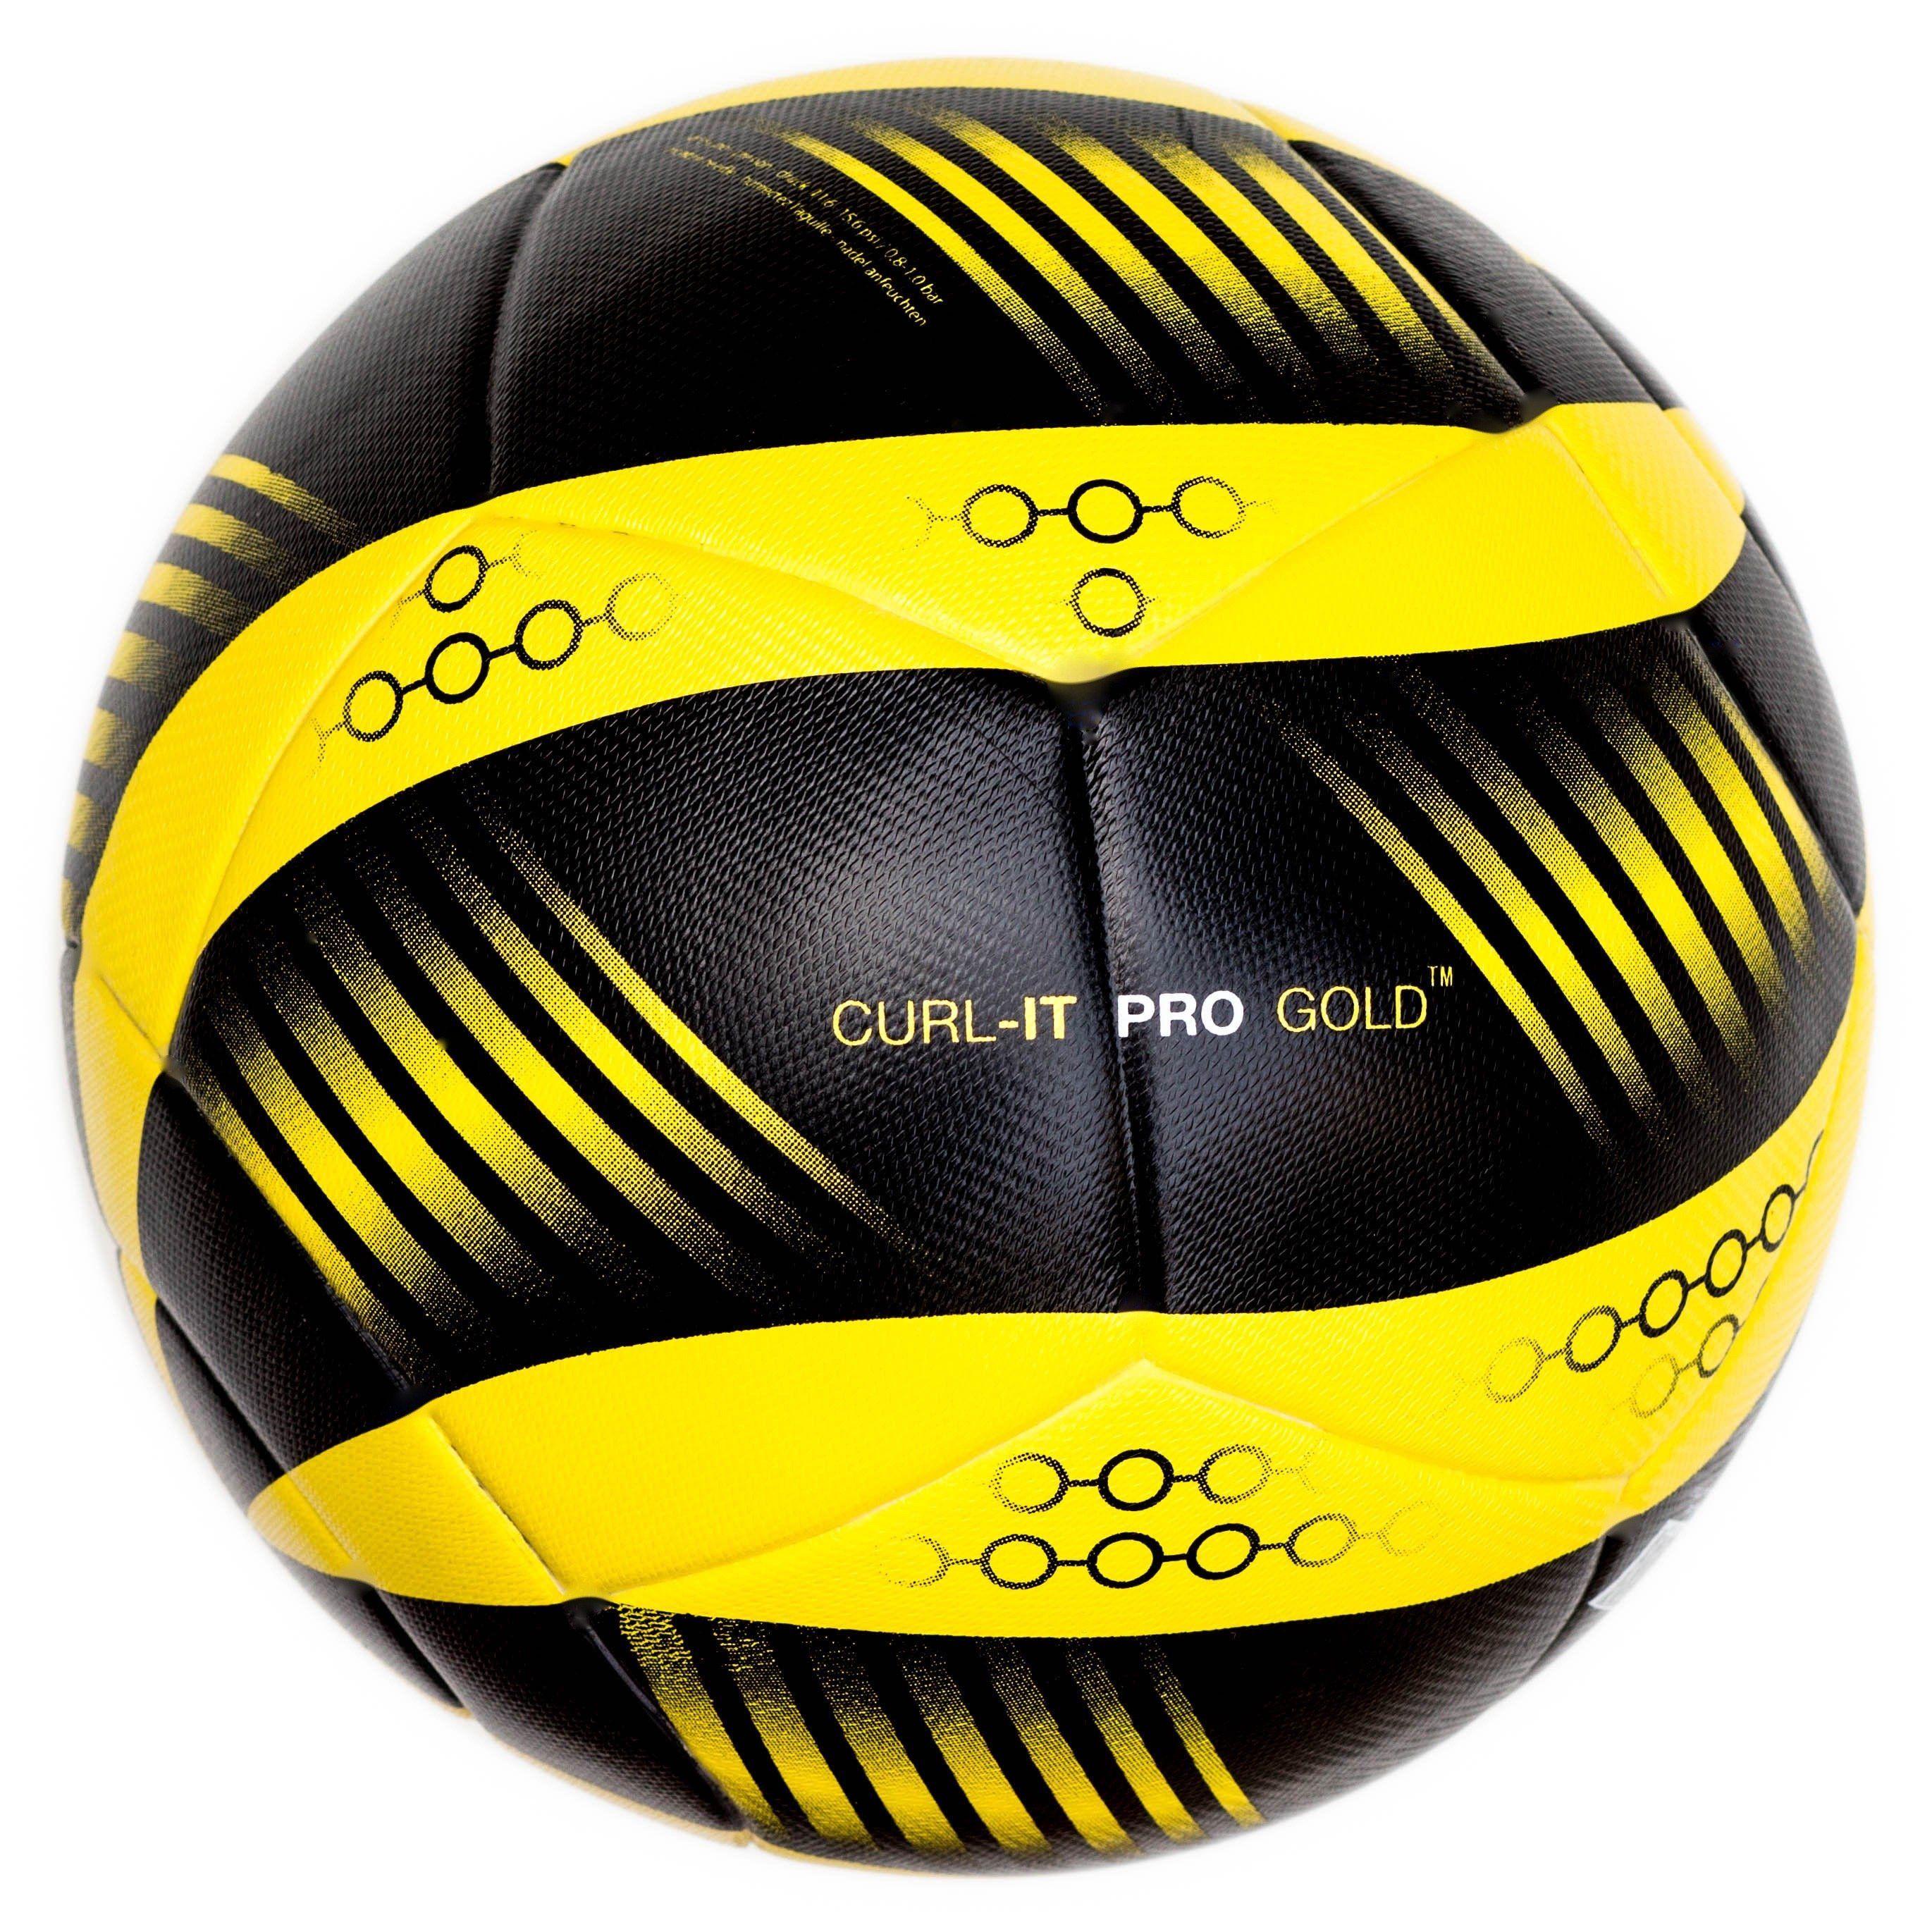 Five Ball Diadora Logo - Bend It Soccer, Curl It Pro Gold, Soccer Ball Size Match Ball